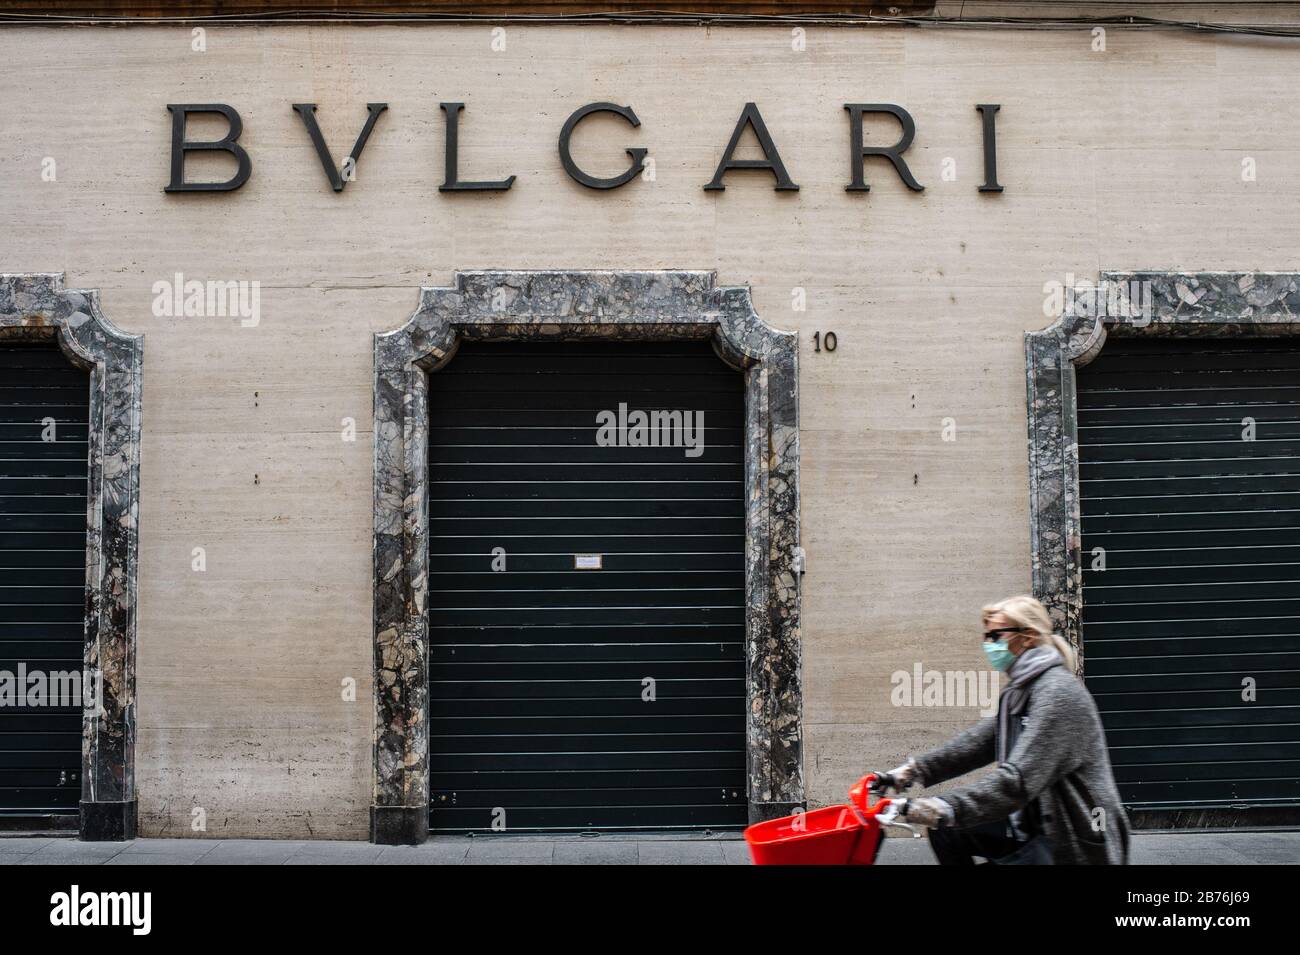 Toutes les marques de mode les plus célèbres ont fermé leurs magasins Dans La Via dei Condotti, dans le centre de Rome, l'une des rues commerçantes les plus célèbres de la capitale, en raison de l'épidémie de Coronavirus qui a frappé l'Italie. Banque D'Images